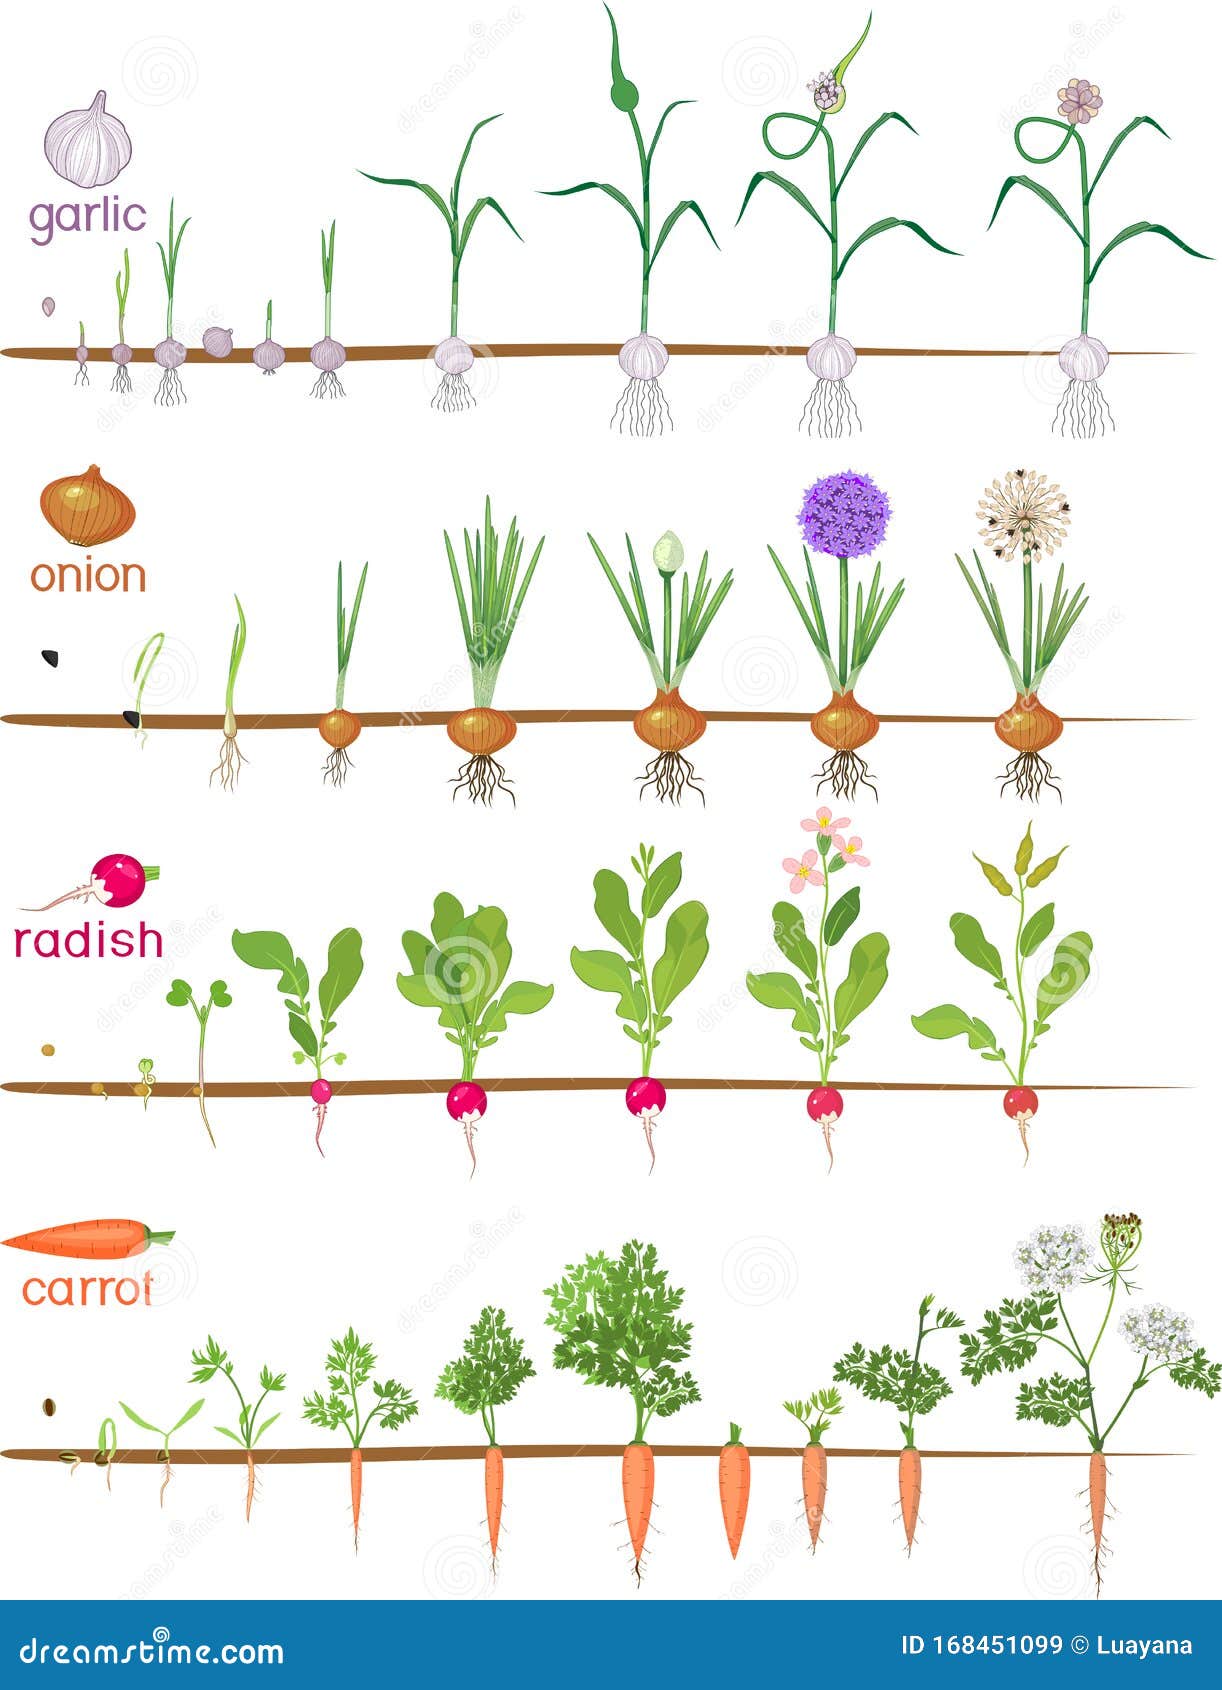 Жизненный цикл овощных растений по маркову. Этапы роста чеснока. Фазы роста чеснока. Стадии роста овощей.